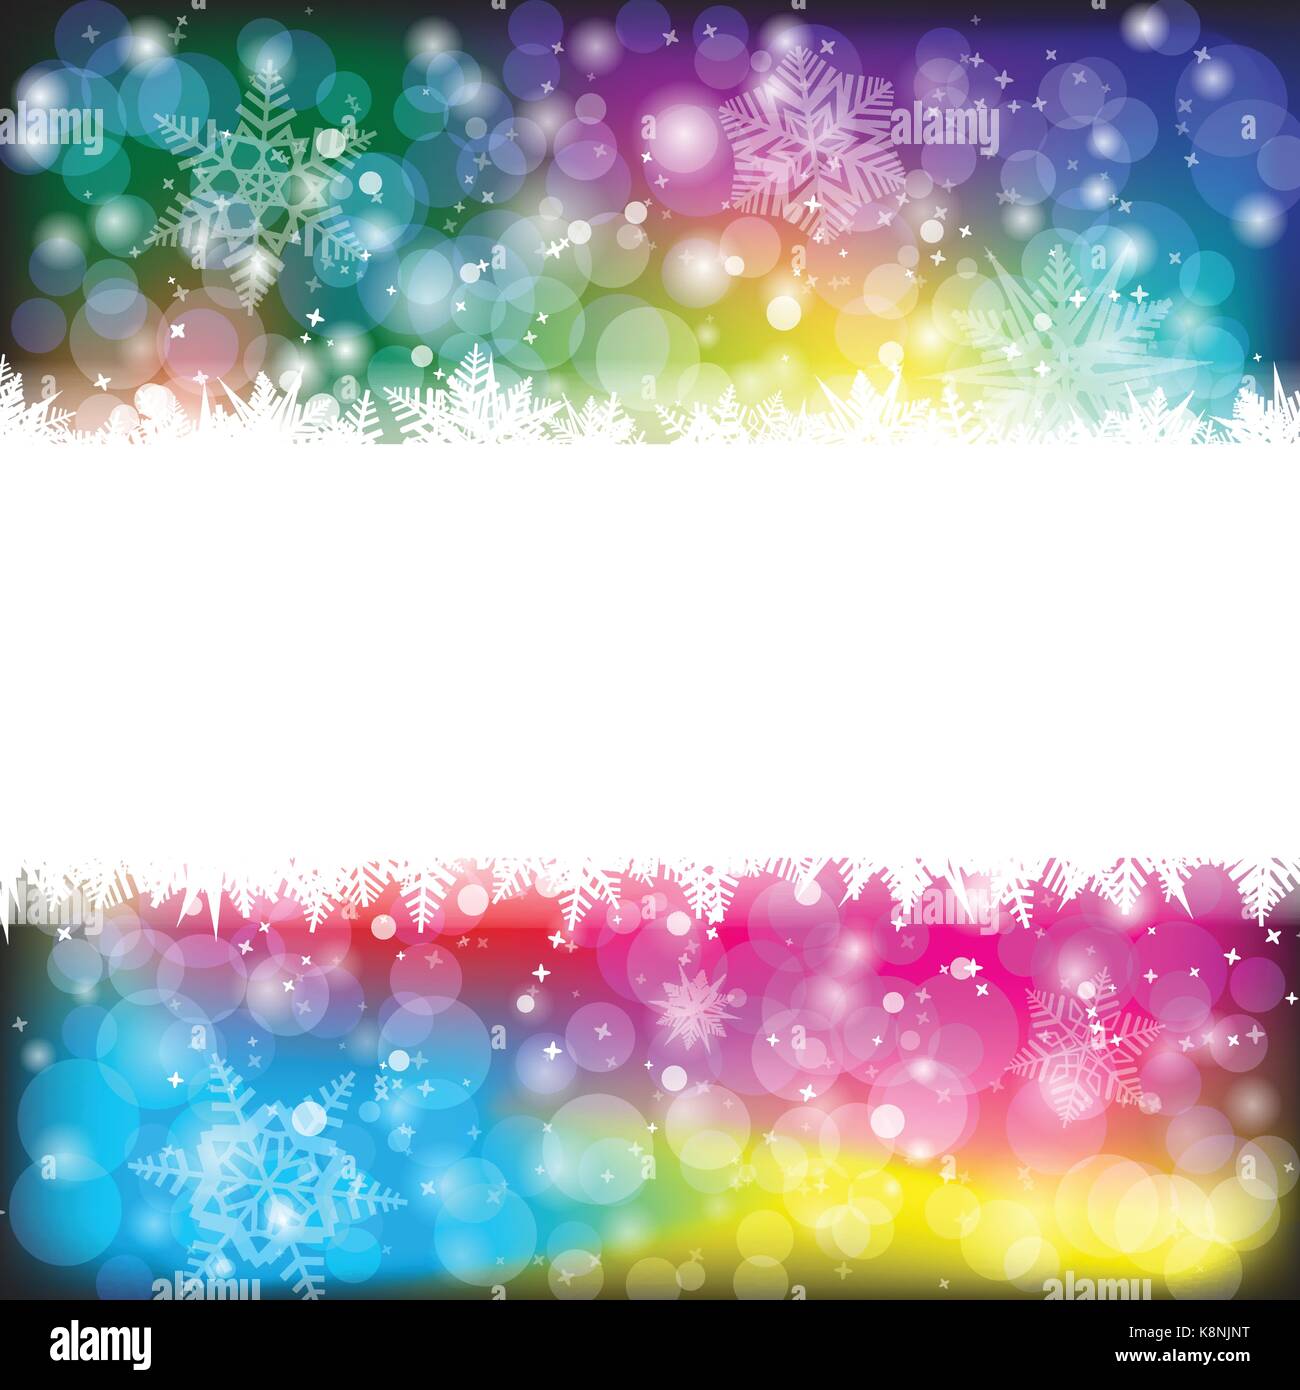 Weihnachten vektor Schneeflocke Hintergrund für die Karte. Schneefall illustration Wallpaper. Stock Vektor